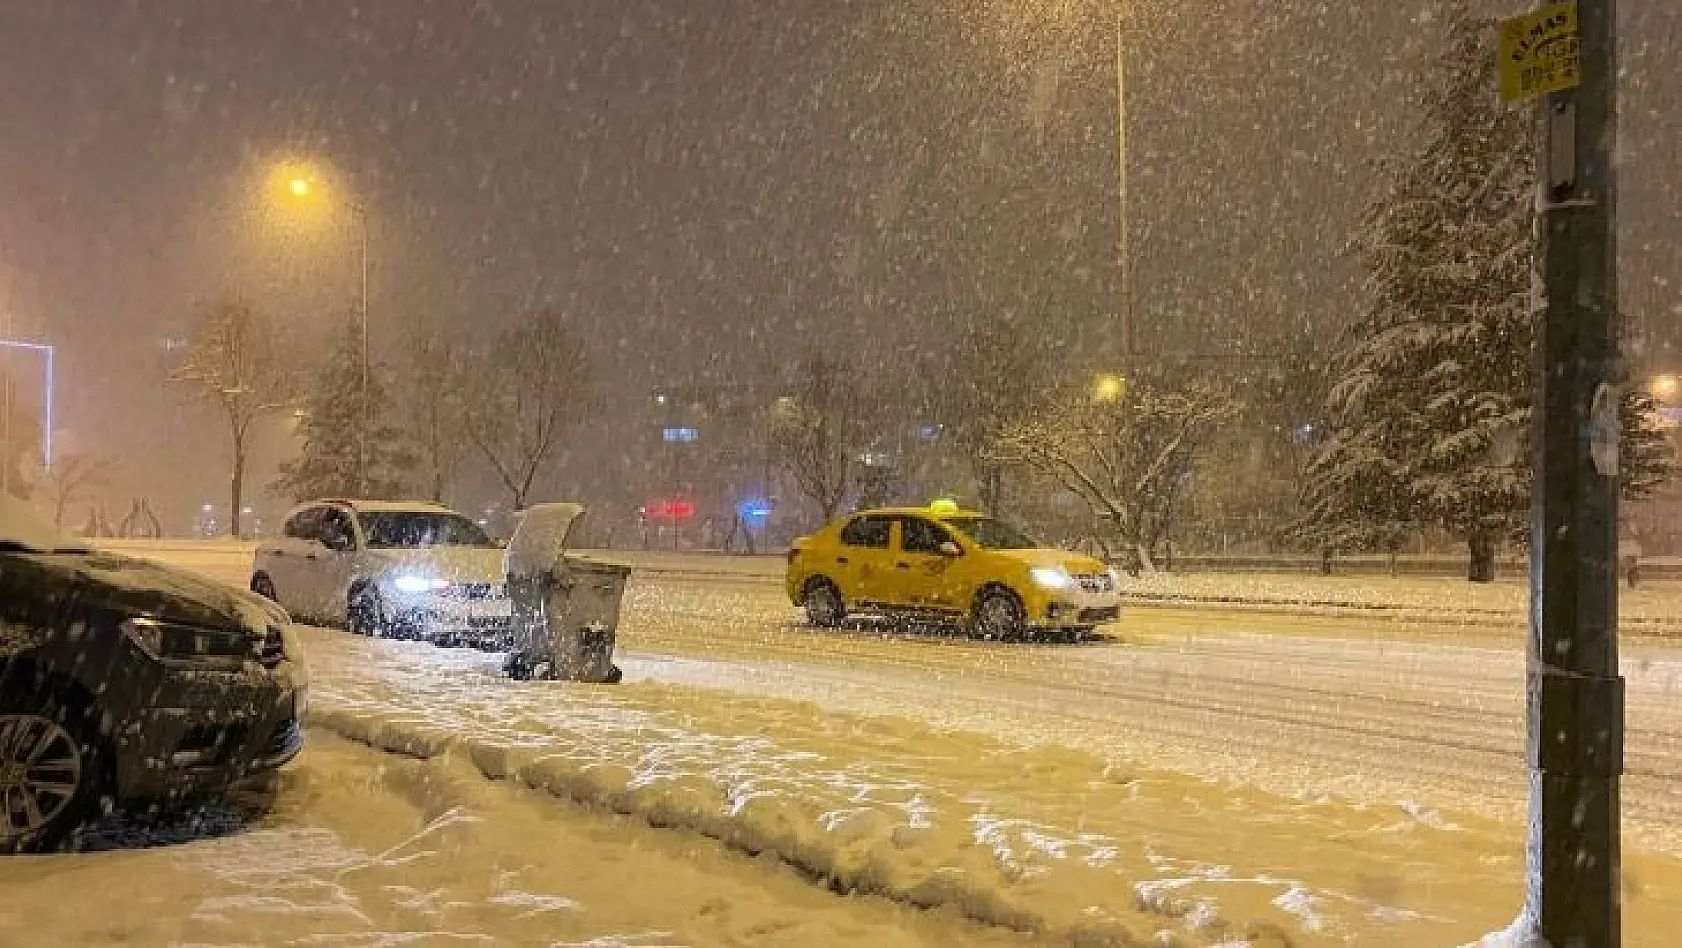 Bursa'da yoğun kar yağışı nedeniyle araçlar ilerlemekte güçlük çekti